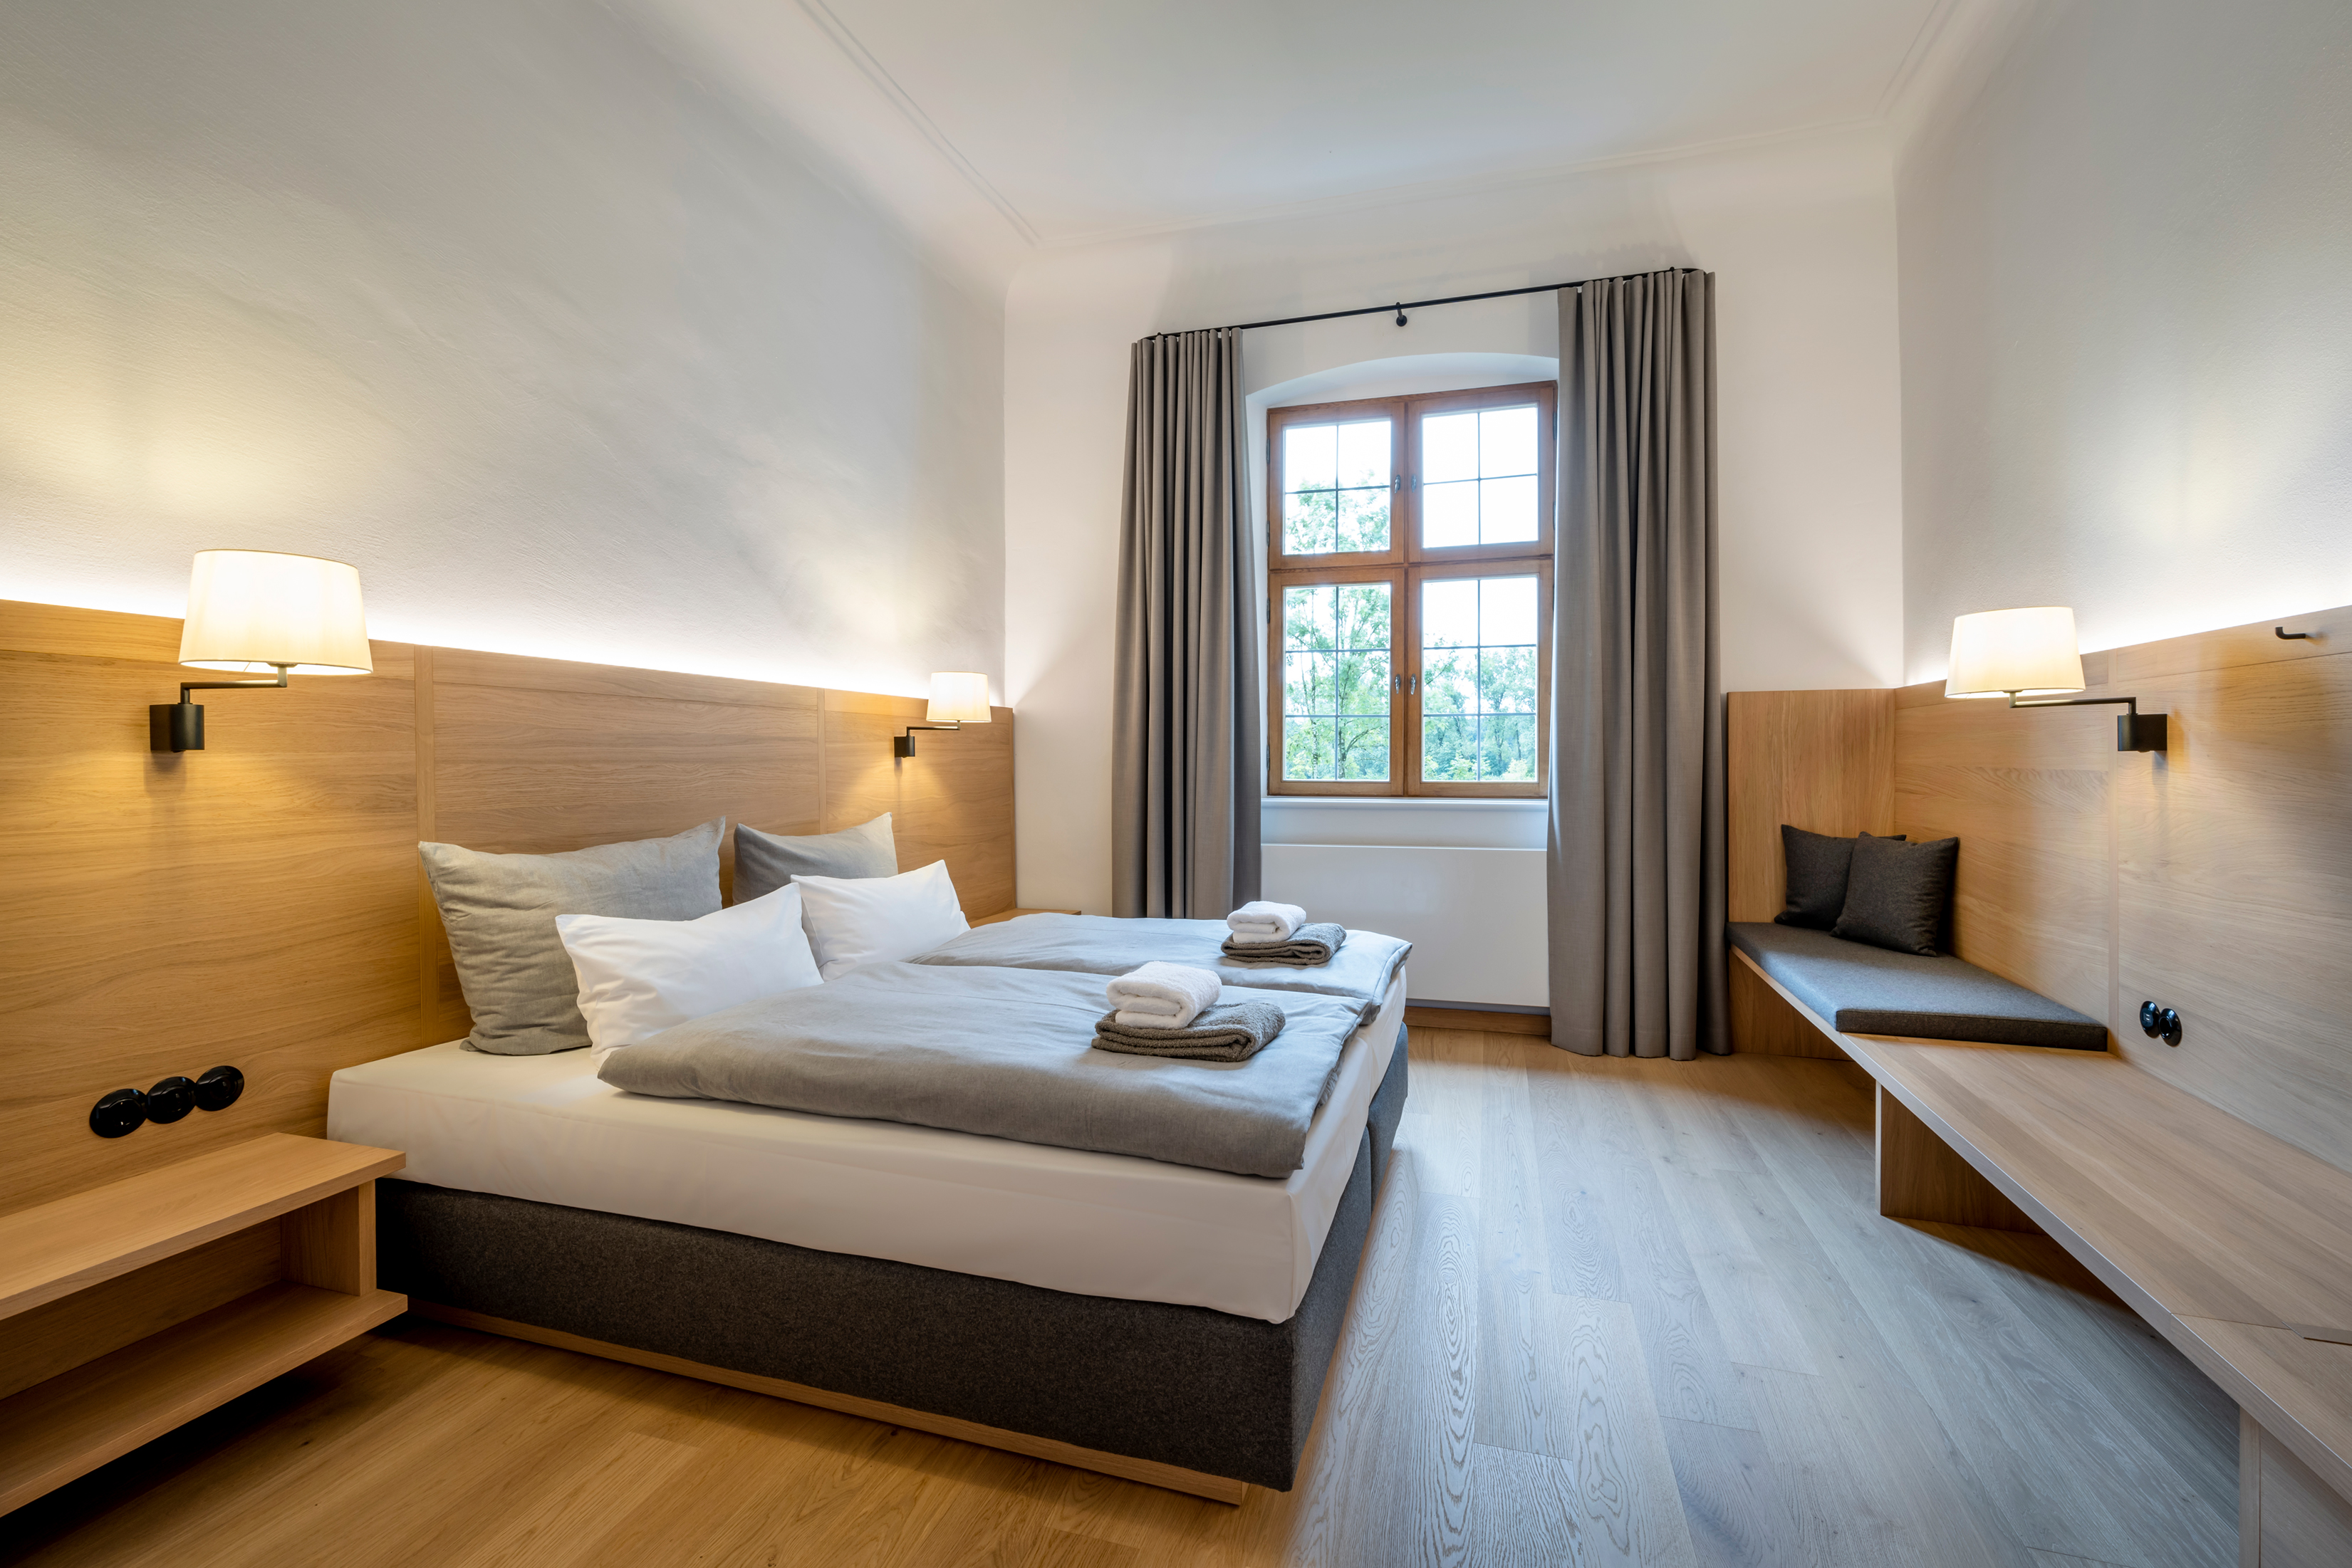 Blick in ein Doppelzimmer mit Holzboden, Beleuchtung und Doppelbett